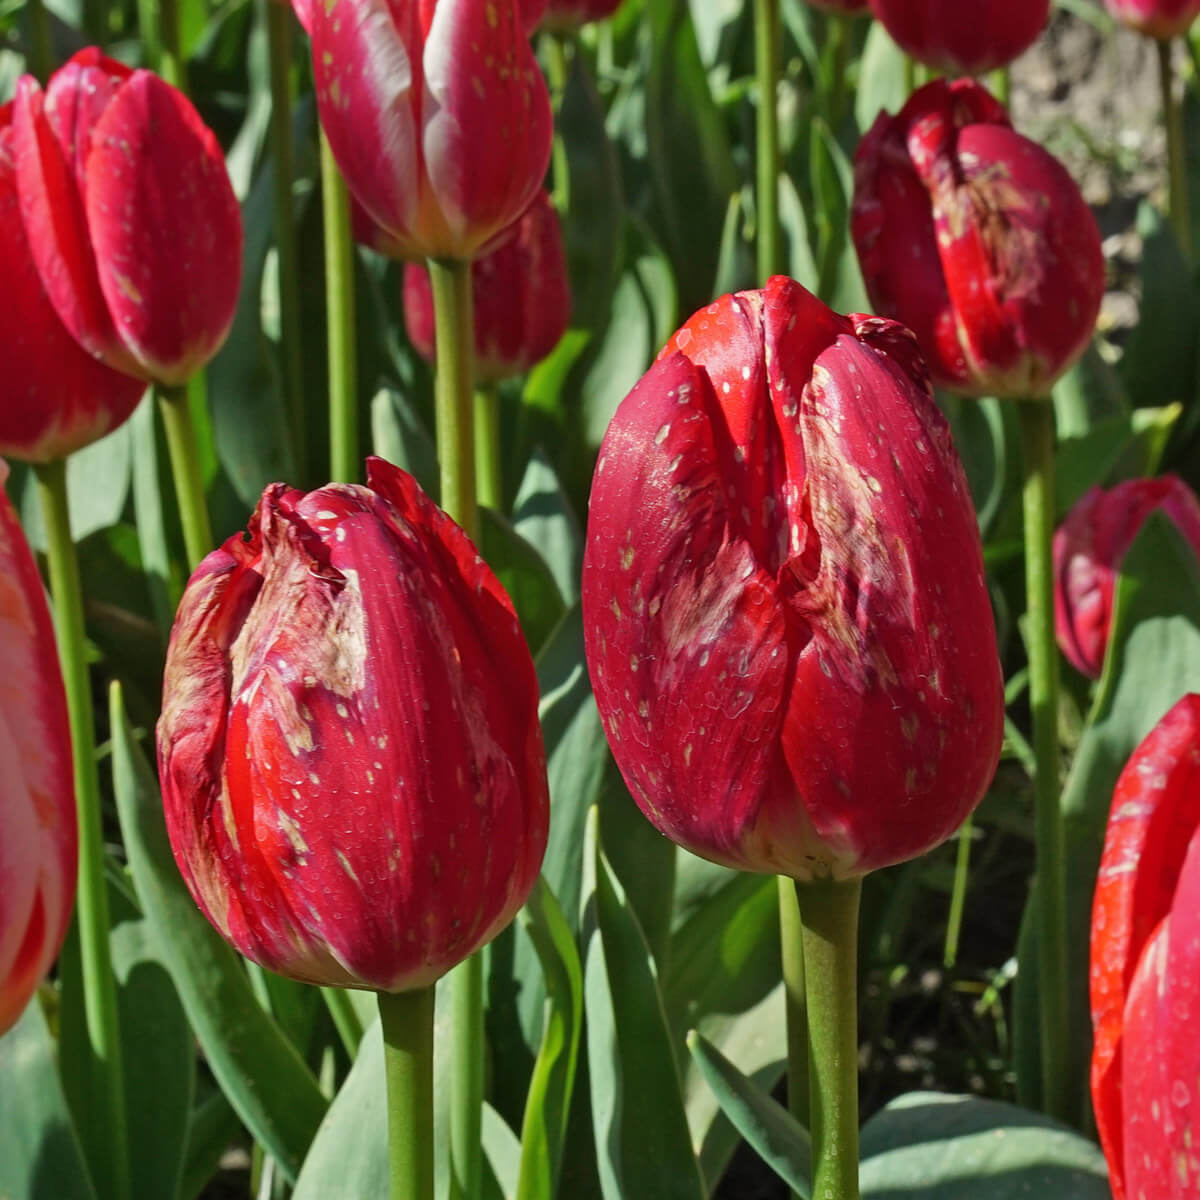 Fire in Tulips